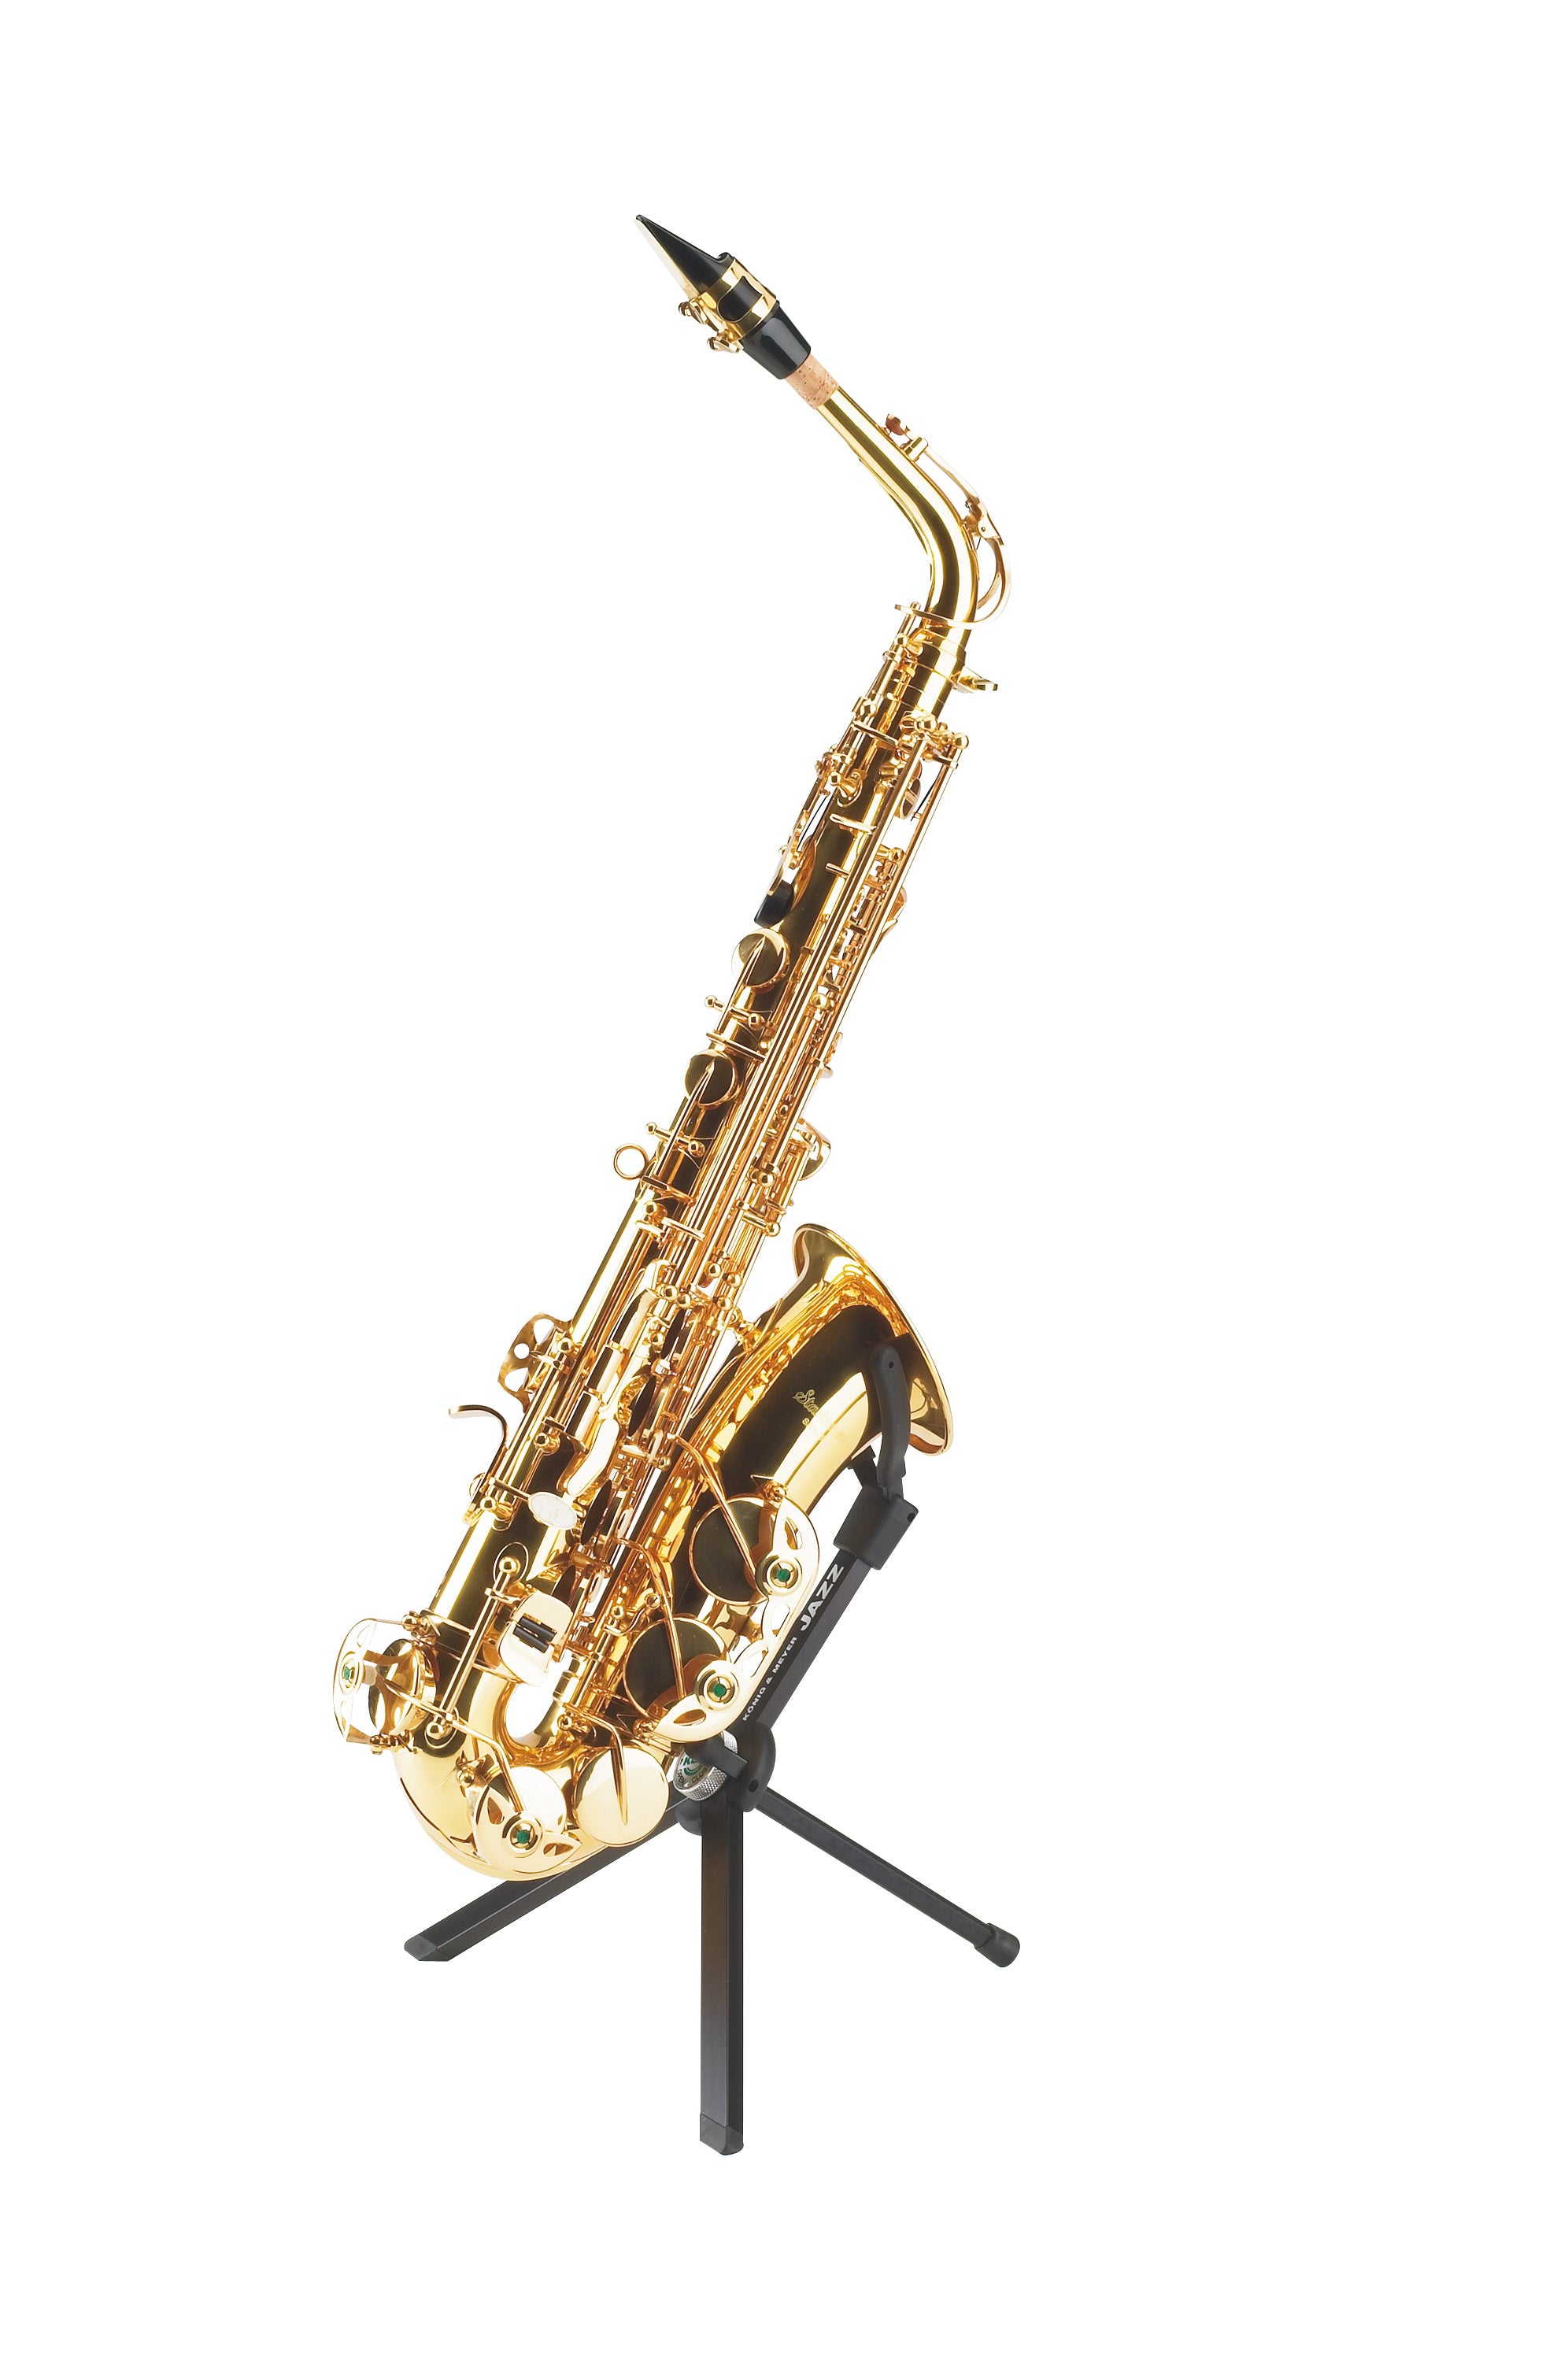 K&M #14330 "JAZZ" Alto Saxophone Stand